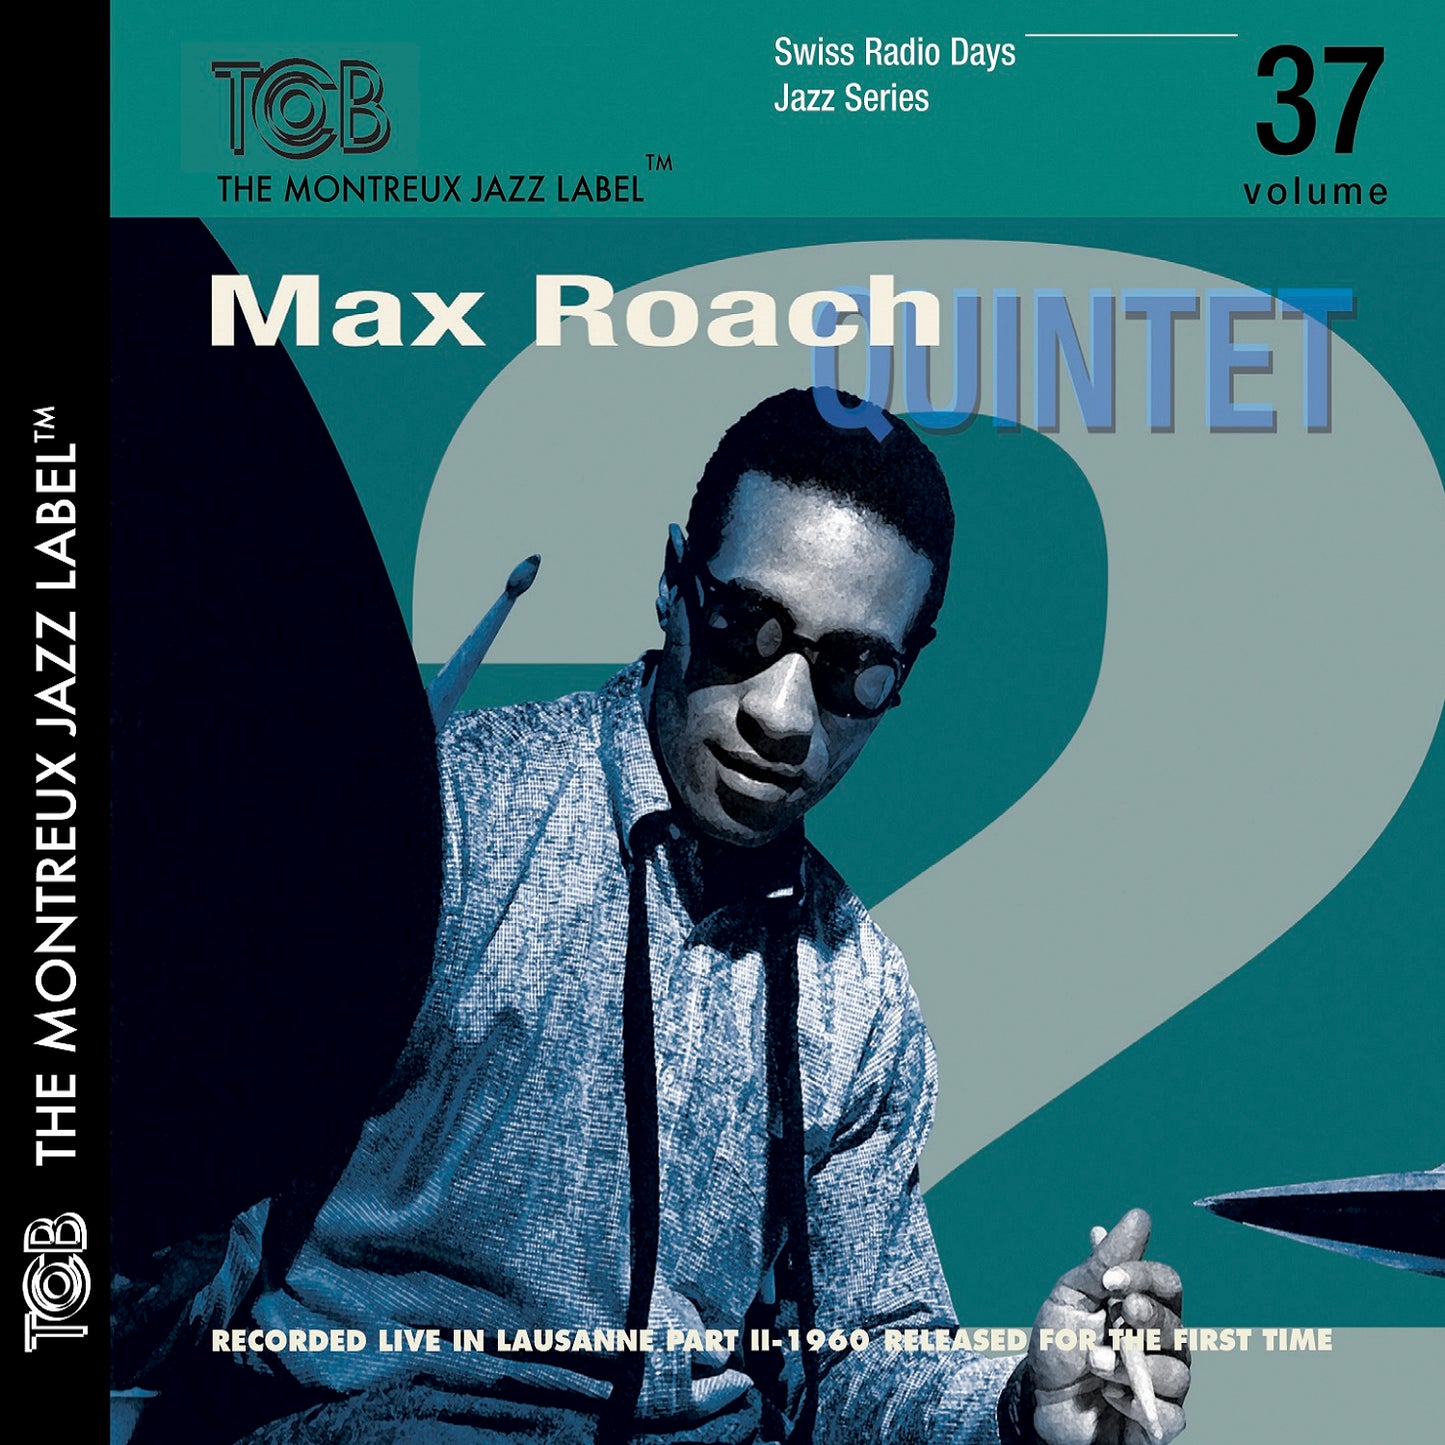 Lausanne 1960 Part 2 / Max Roach Quintet